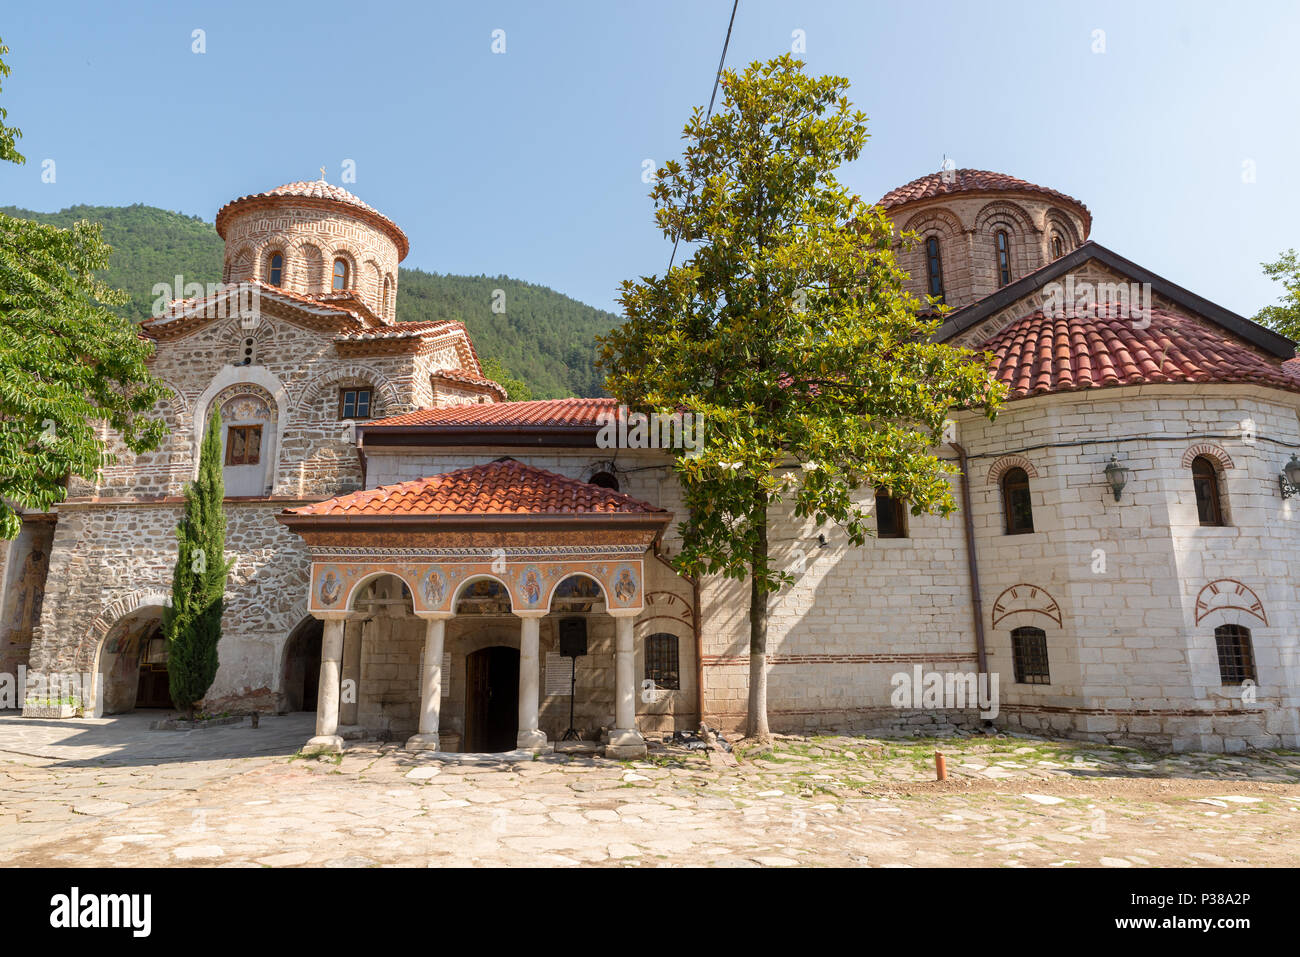 BACHKOVO KLOSTER, Bulgarien - Juni 7, 2018: Das Bachkovo Kloster ist ein wichtiges Denkmal der christlichen Architektur und eine der größten und Olde Stockfoto